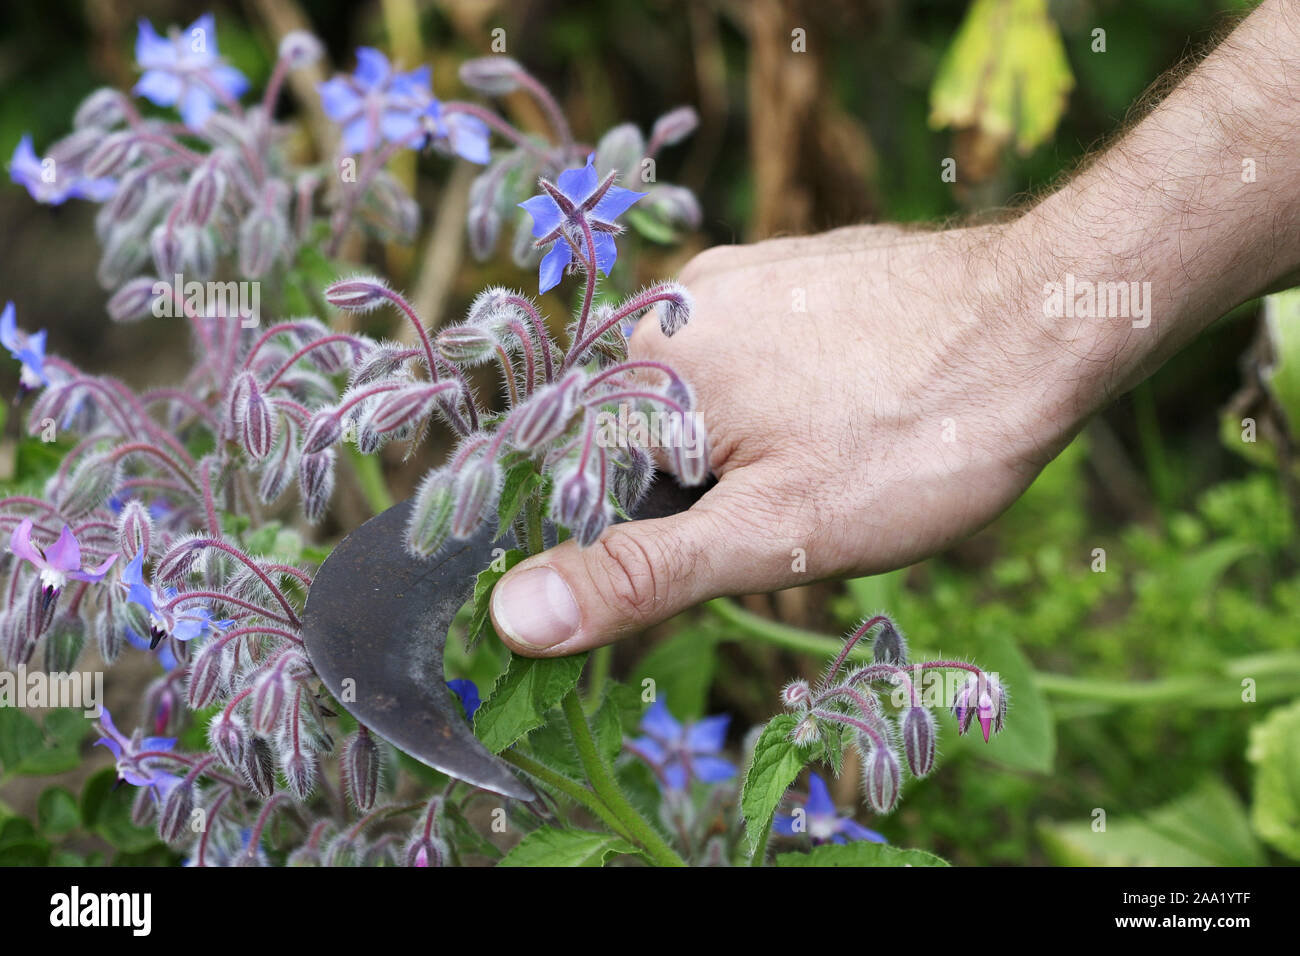 Eine Gärtnerhand schneidet Boretschblüten mit einer geschwungenen Hippe / A gardeners hand is cutting borage flowers with a spezial gardener knife Stock Photo